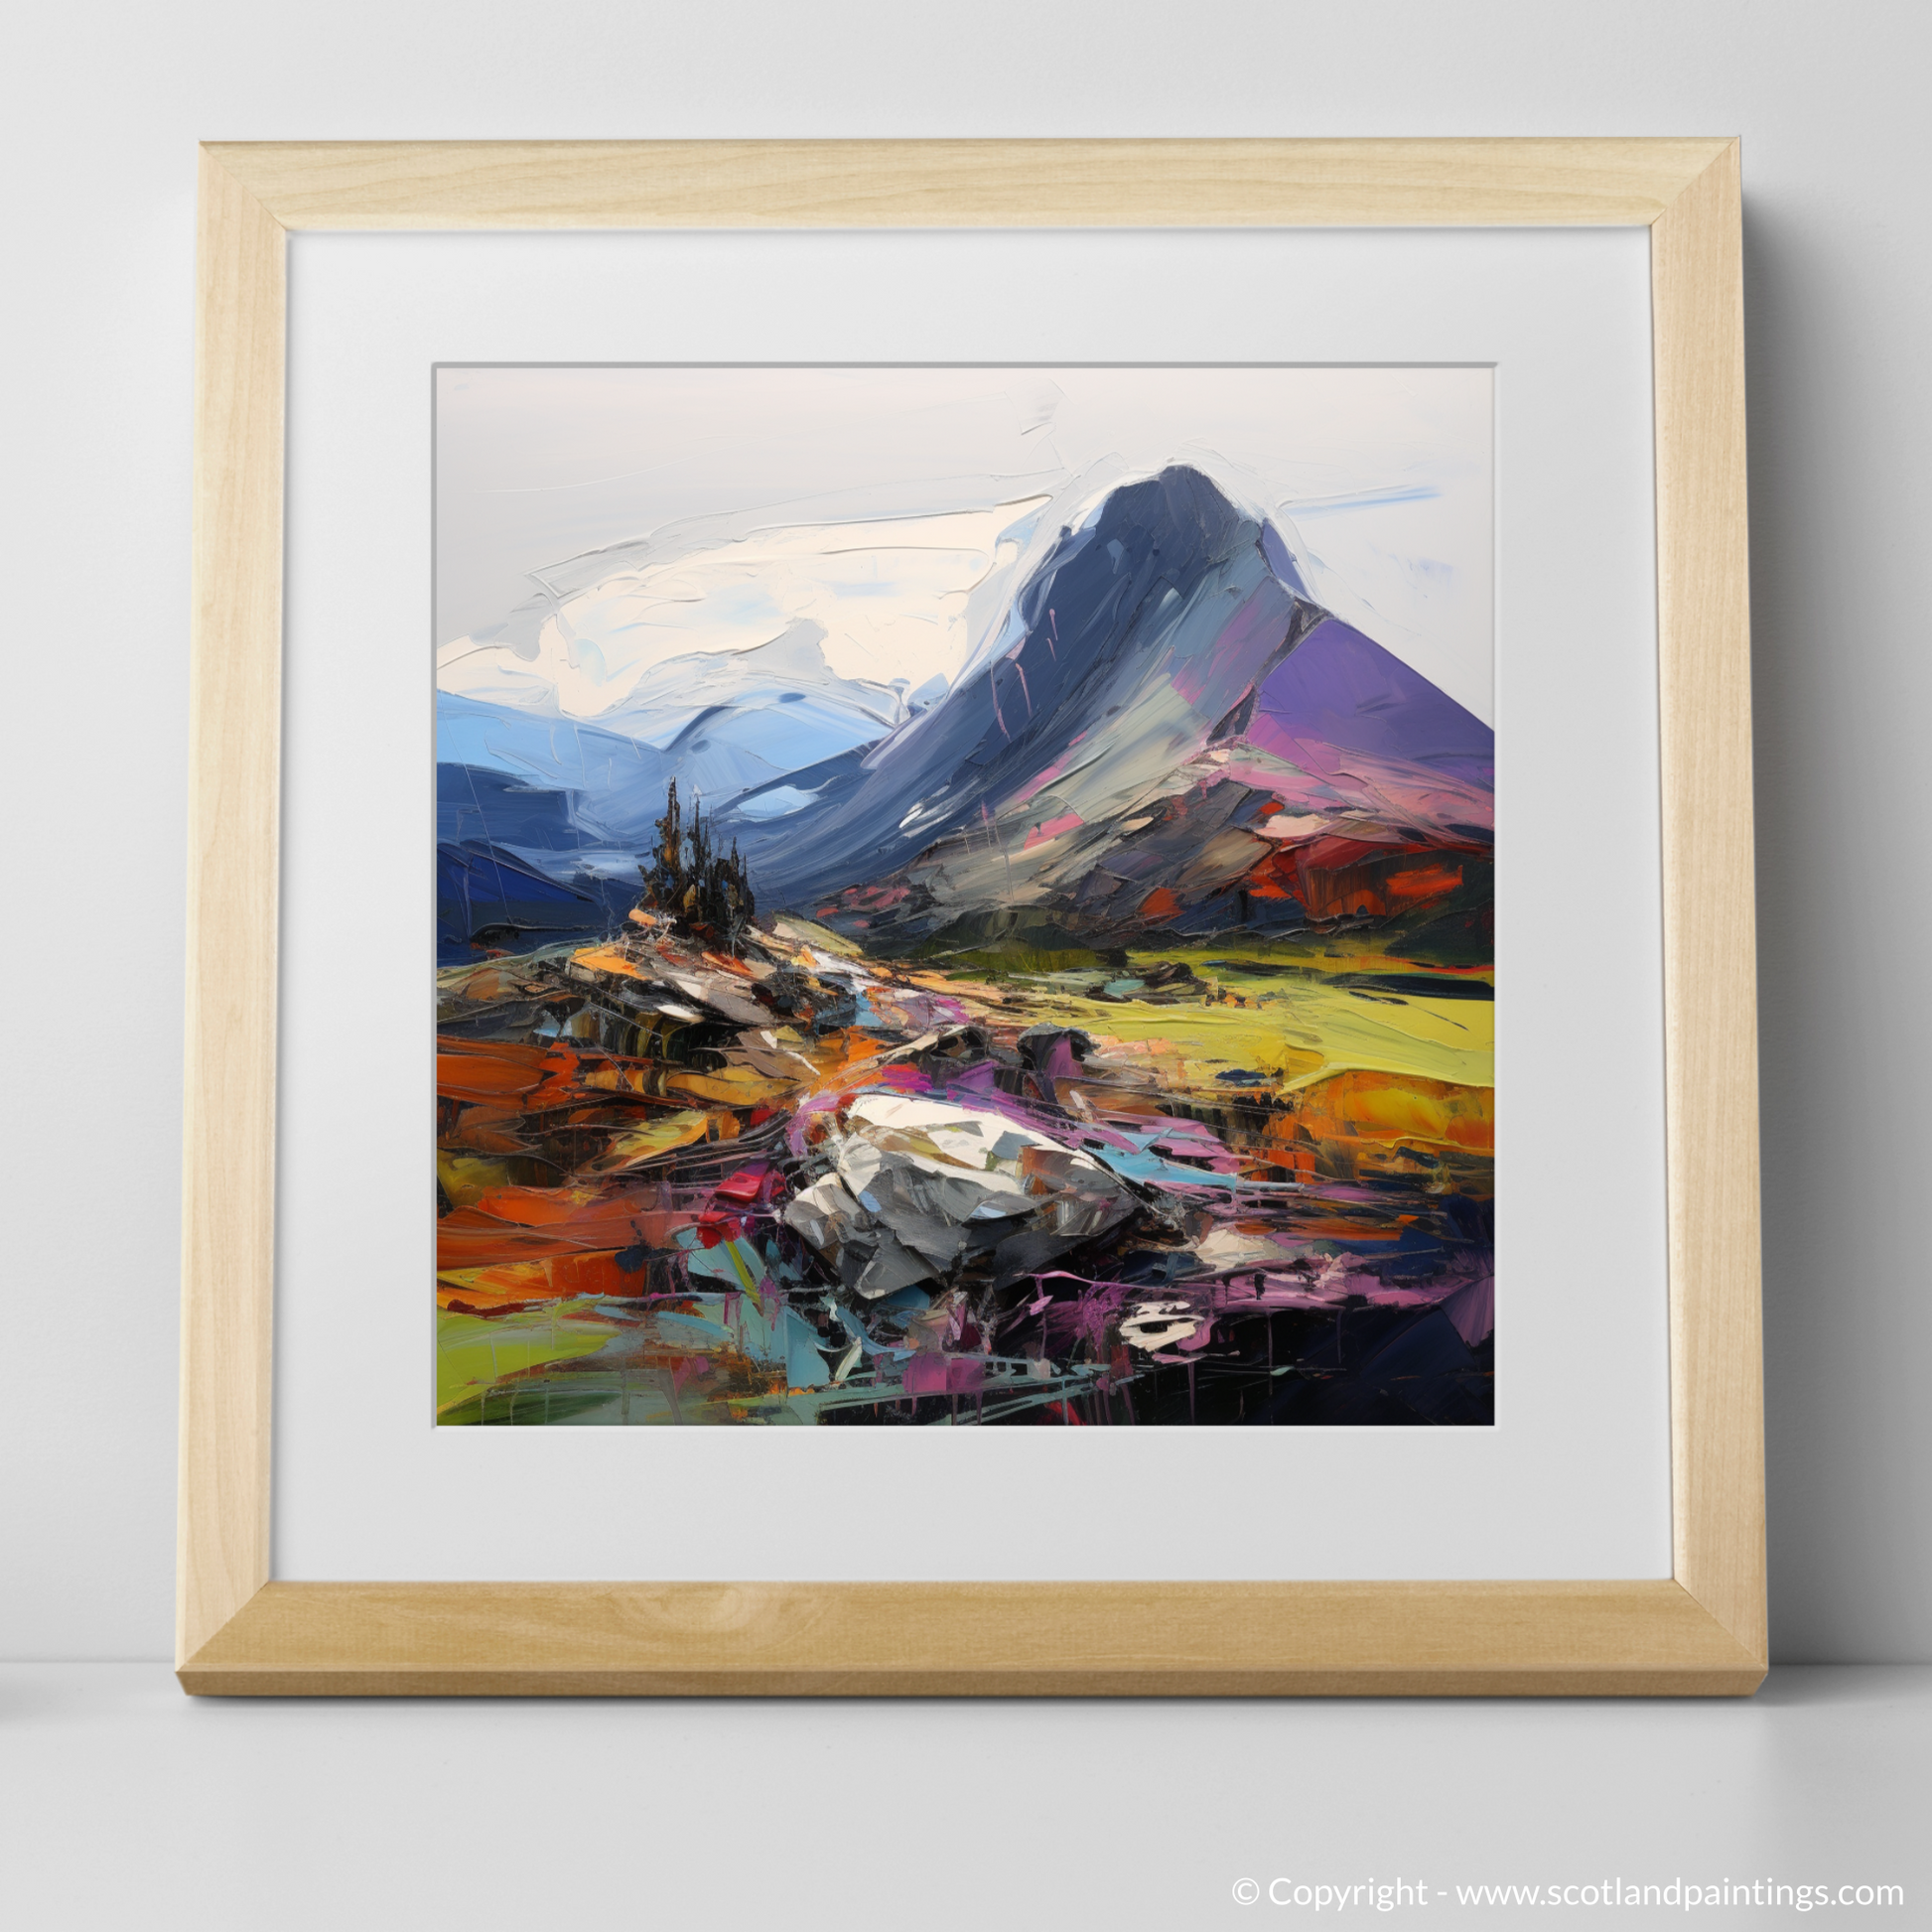 Art Print of Cairn Gorm, Highlands with a natural frame